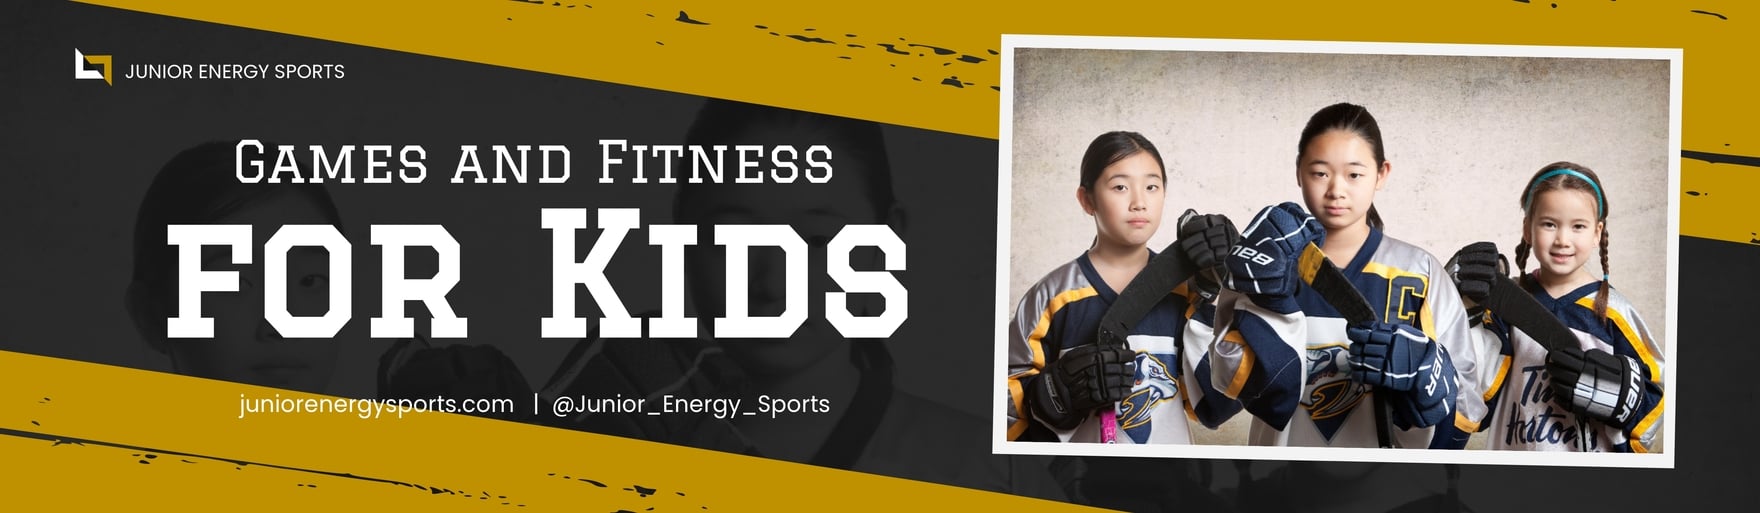 Kids Sports Billboard Template